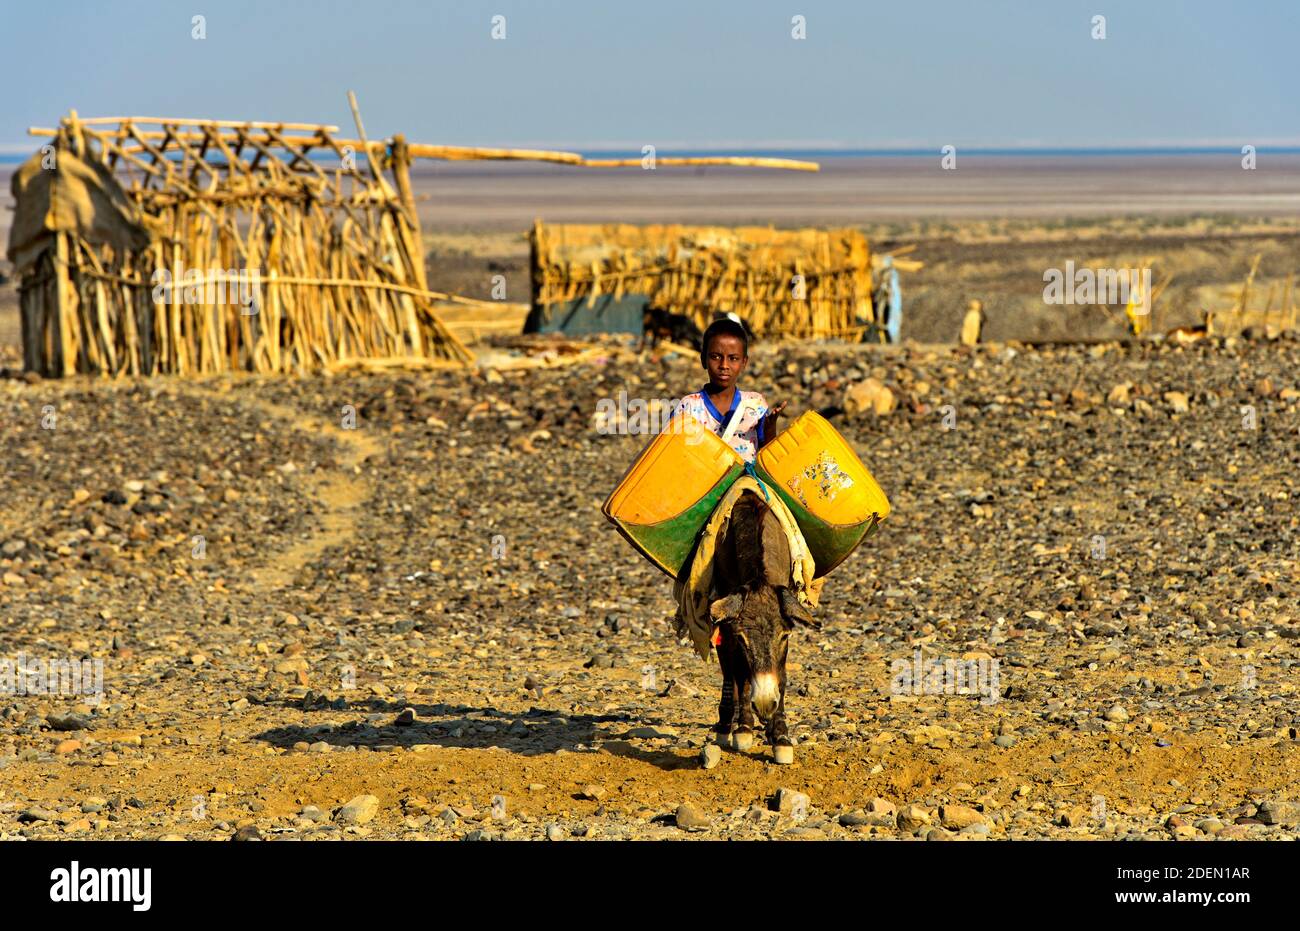 Kleiner Junge mit Esel und Wasserkanistern auf dem Weg zur Wasserstelle, Hamadela, Danakil Senke, Afar Region, Äthiopien / Little boy fetching acqua w Foto Stock